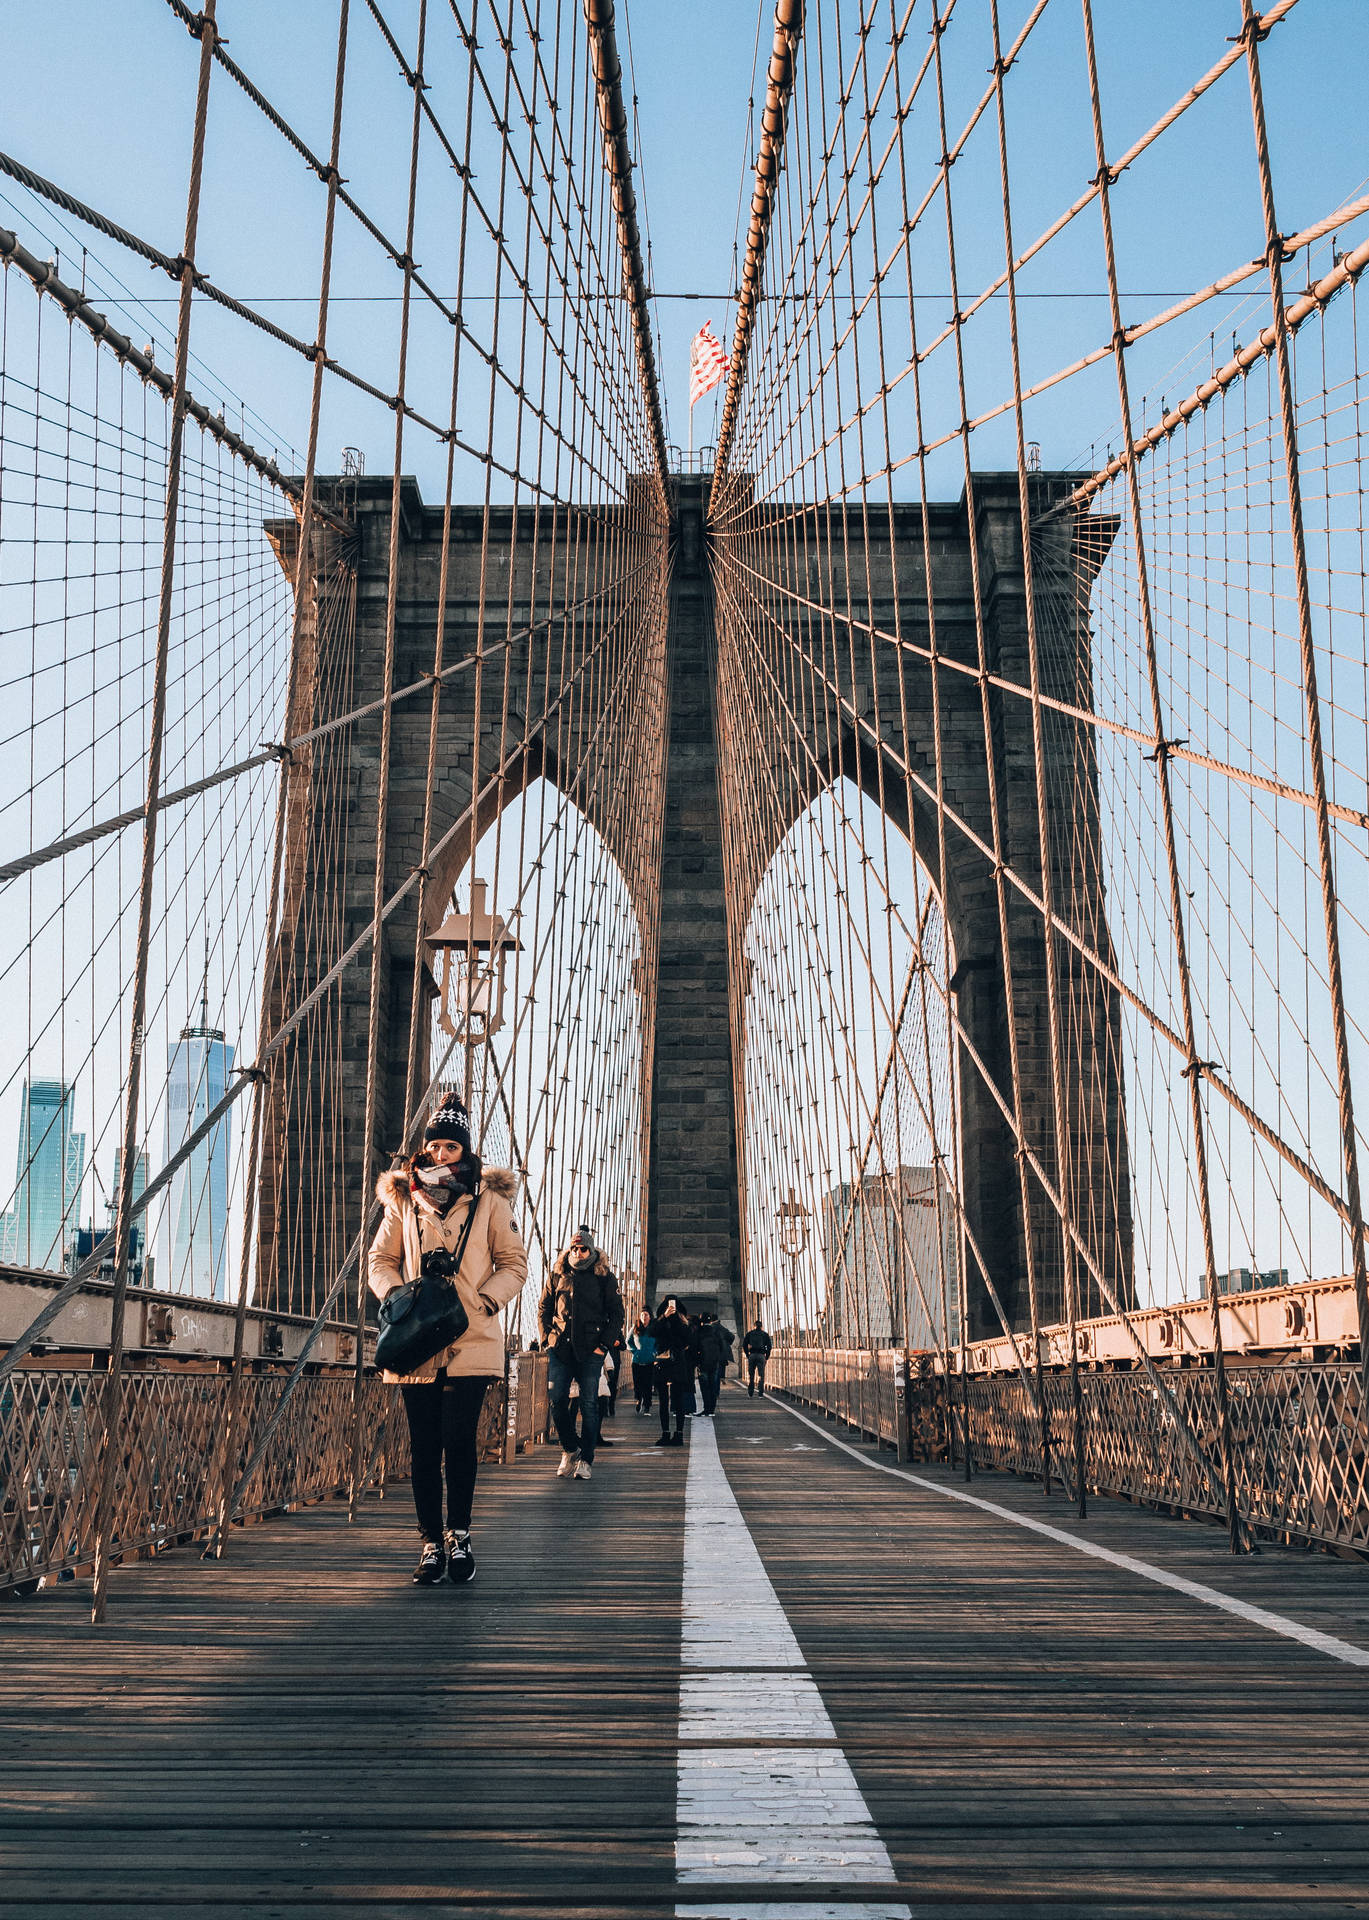 I Brooklyn Bridge: Start din dag med et livligt billede af natur. Wallpaper